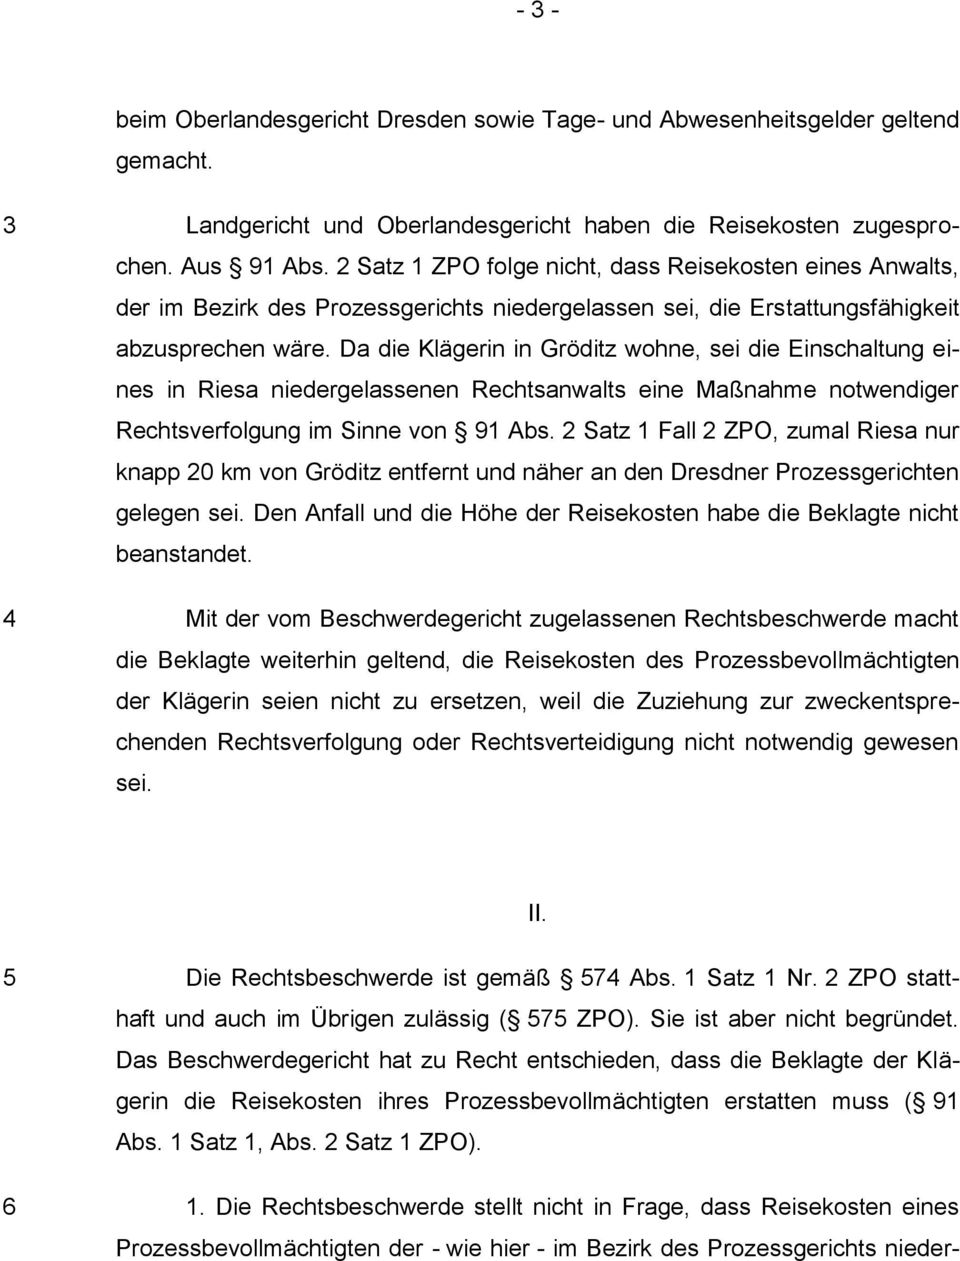 Da die Klägerin in Gröditz wohne, sei die Einschaltung eines in Riesa niedergelassenen Rechtsanwalts eine Maßnahme notwendiger Rechtsverfolgung im Sinne von 91 Abs.